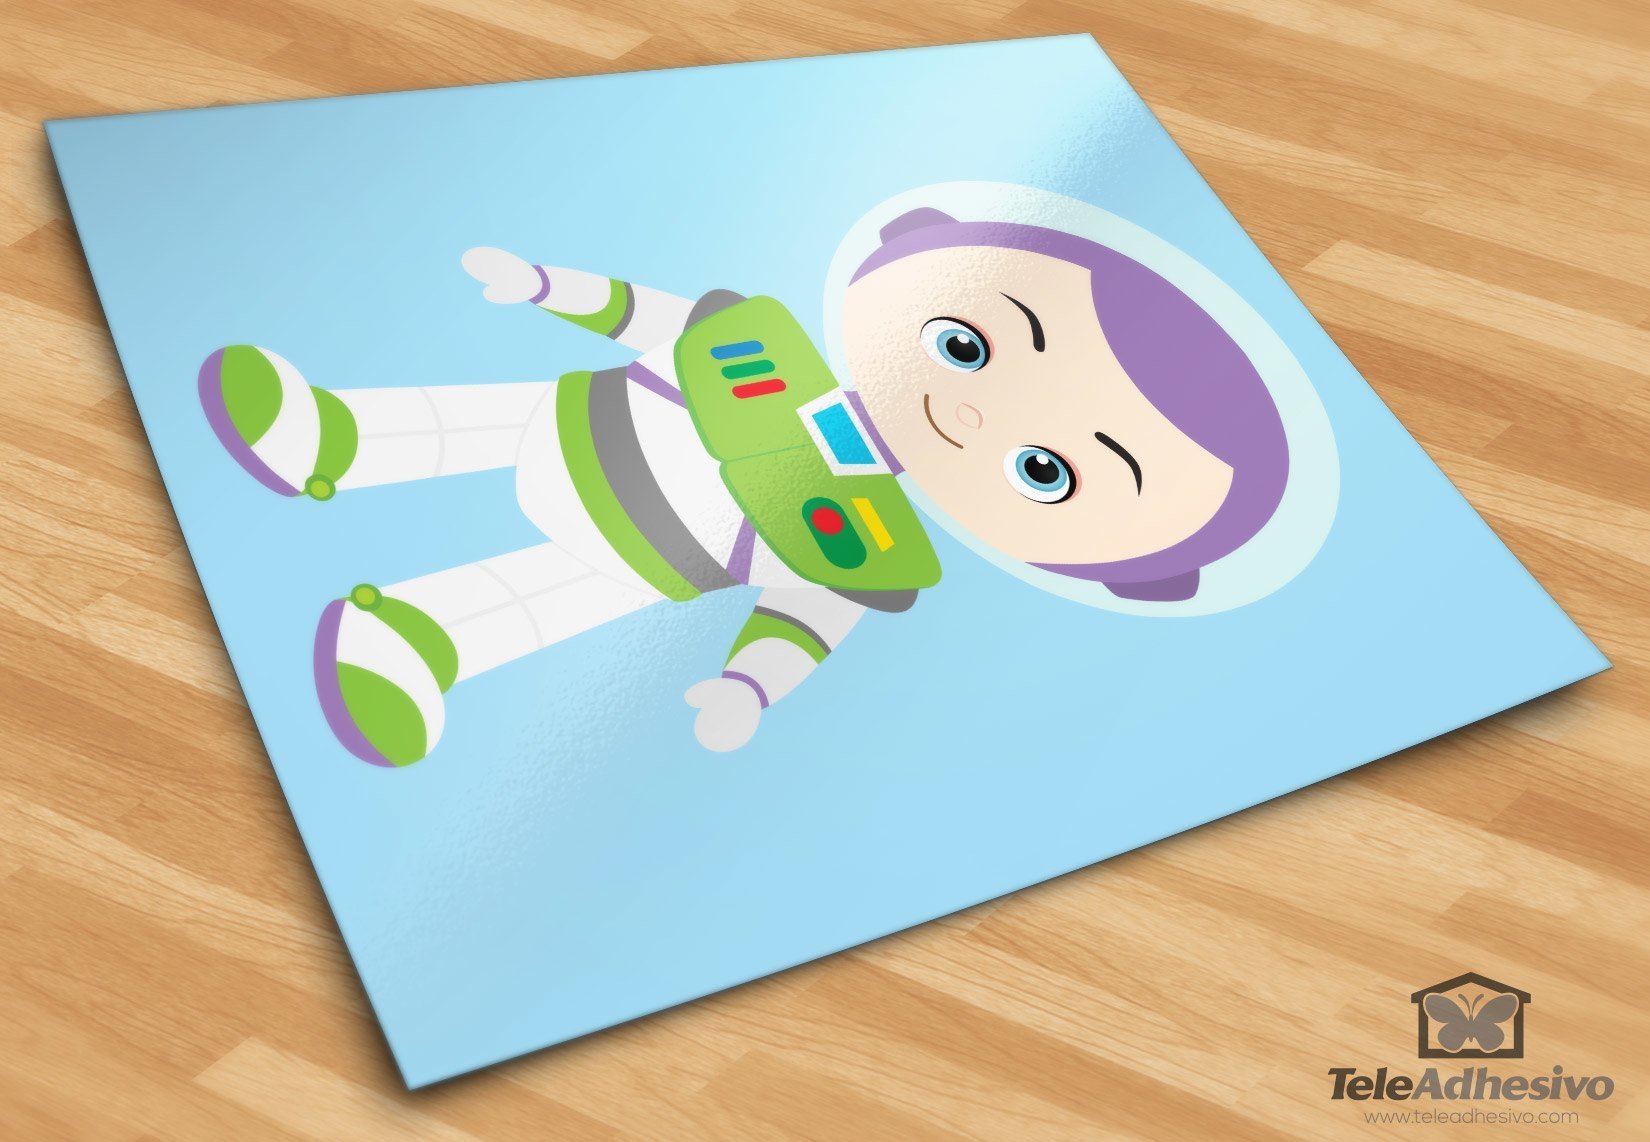 Stickers for Kids: Buzz Lightyear, Toy Story